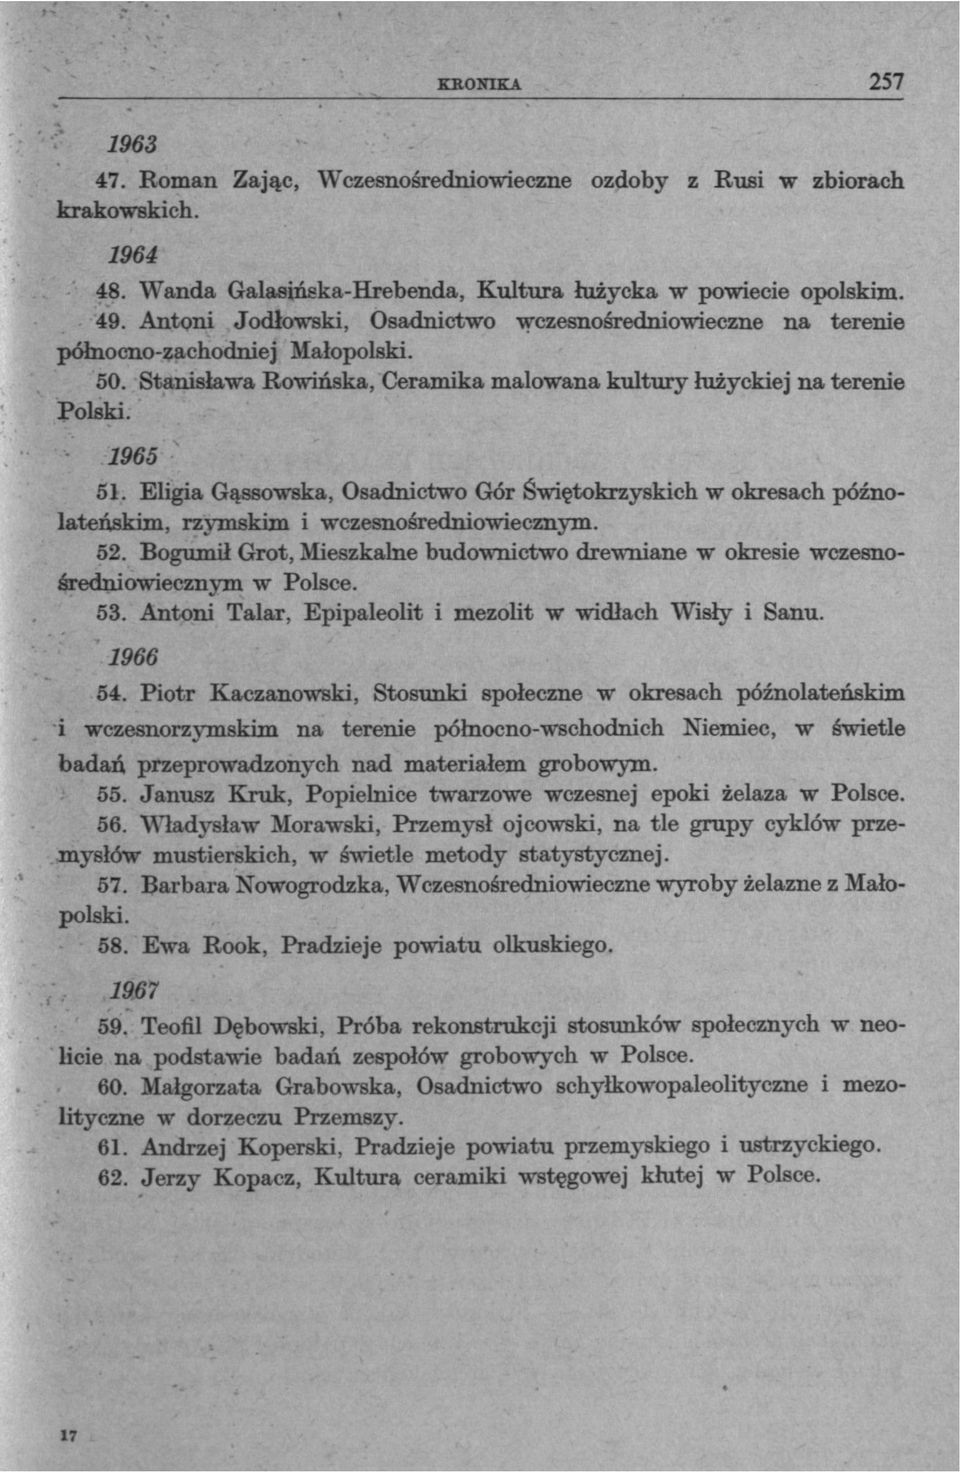 Eligia Gąssowska, Osadnictwo Gór Świętokrzyskich w okresach późnolateńskim, rzymskim i wczesnośredniowiecznym. 52.